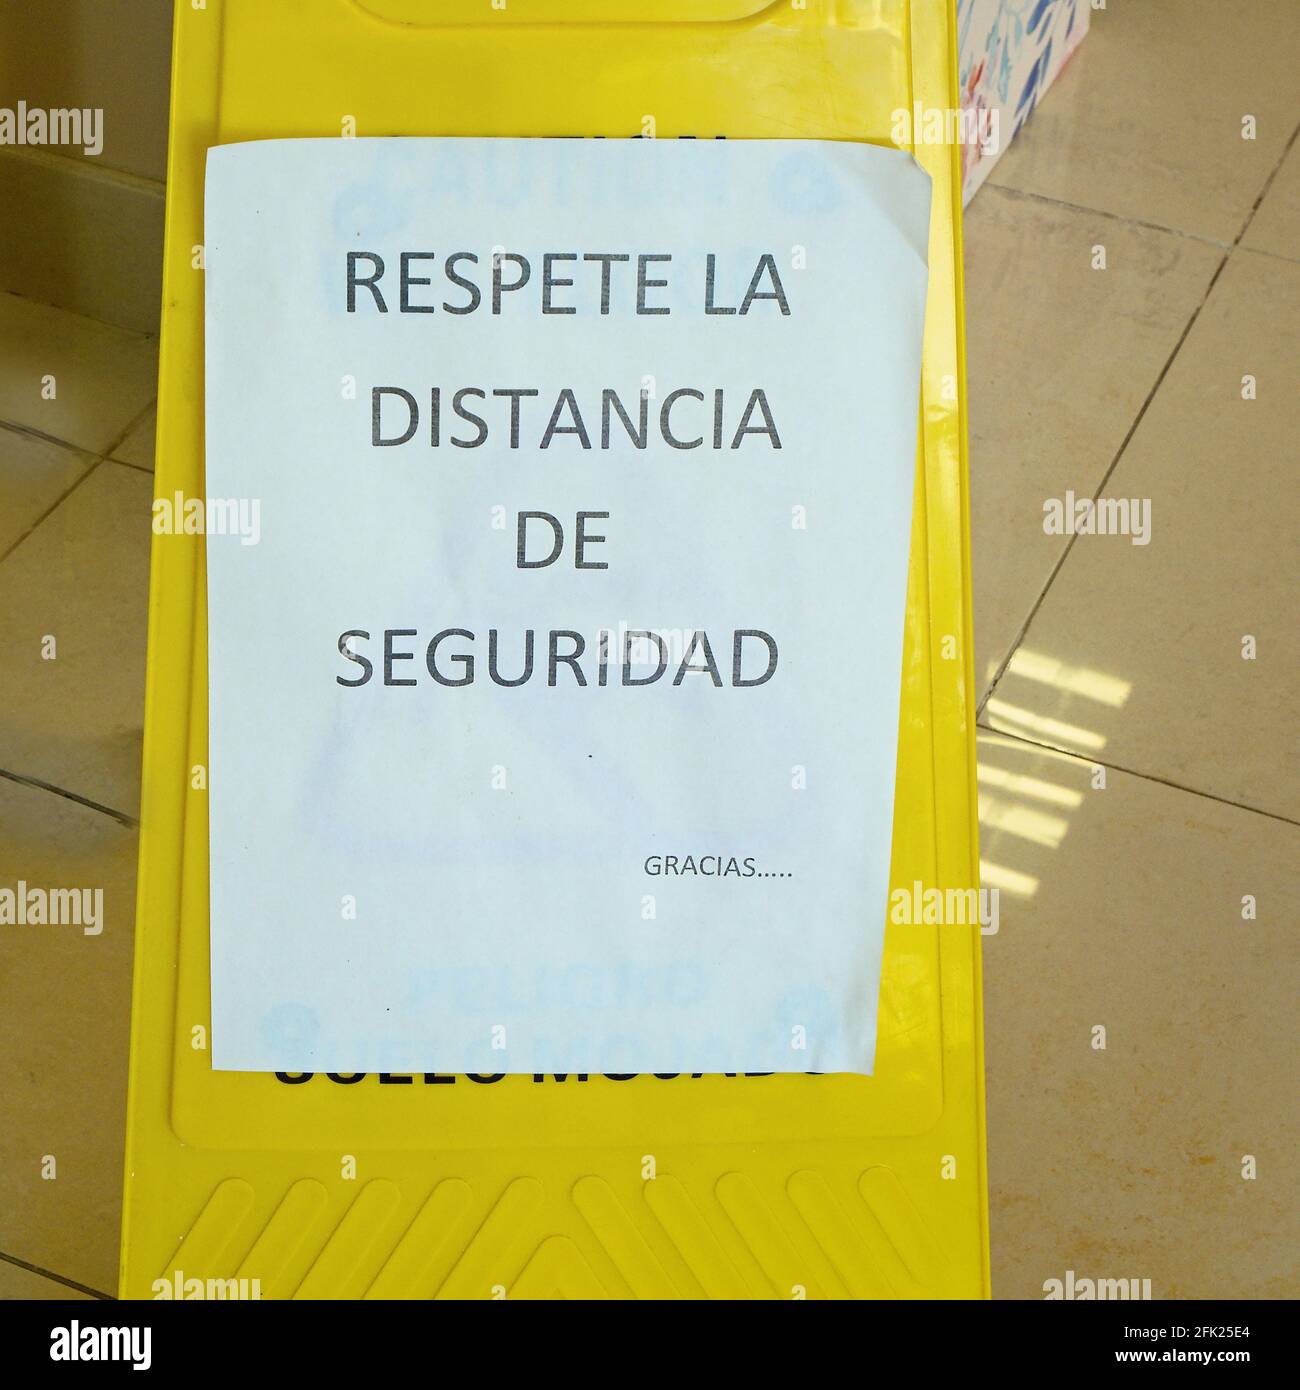 Hay un letrero de advertencia en una tienda que dice 'Respeta la Distancia de Seguridad' en español. Respetar la distancia de seguridad en tiempos de Corona. Foto de stock